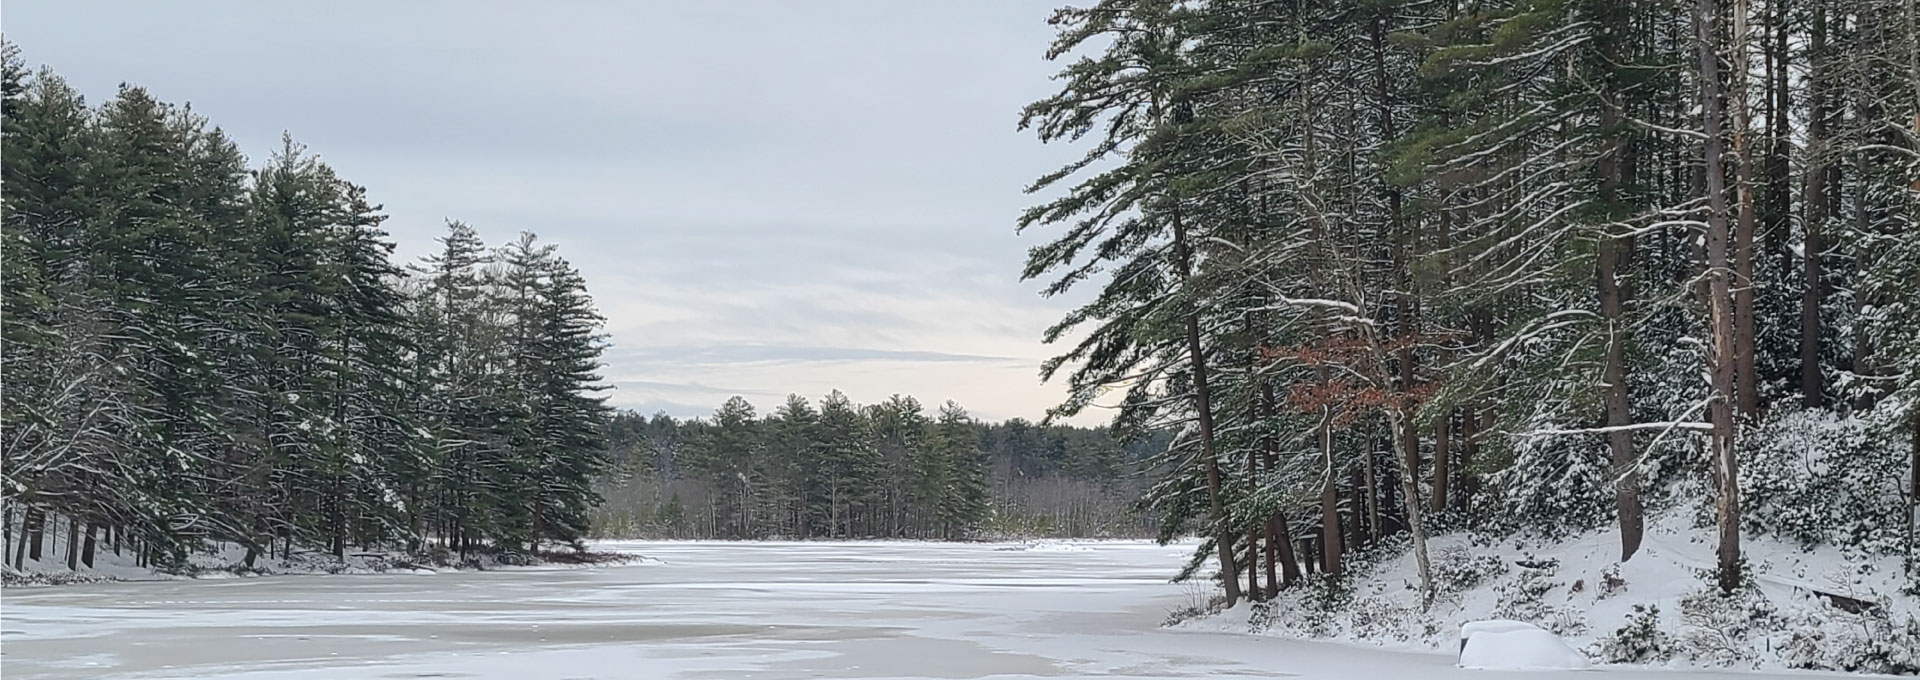 Lake shoreline in winter